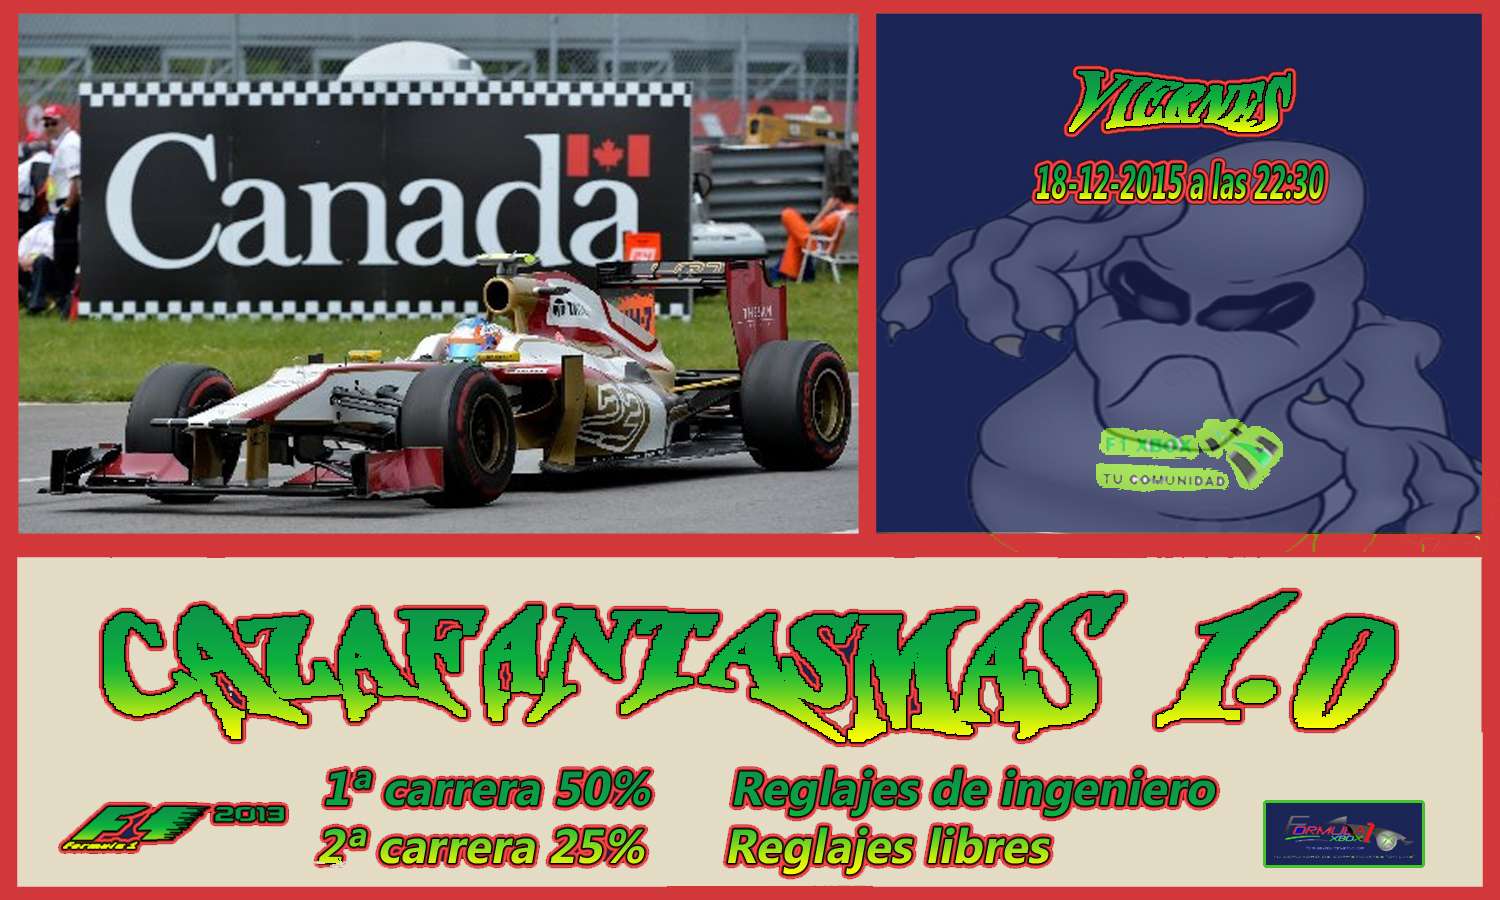  F1 2013 //CTO. CAZAFANTASMAS 1.0 - F1 XBOX CONFIRMACIÓN DE ASISTENCIA /  G. P. DE CANADÁ / VIERNES, 18 DE DICIEMBRE DE 2015 A LAS 22:30 HORAS. Canada13